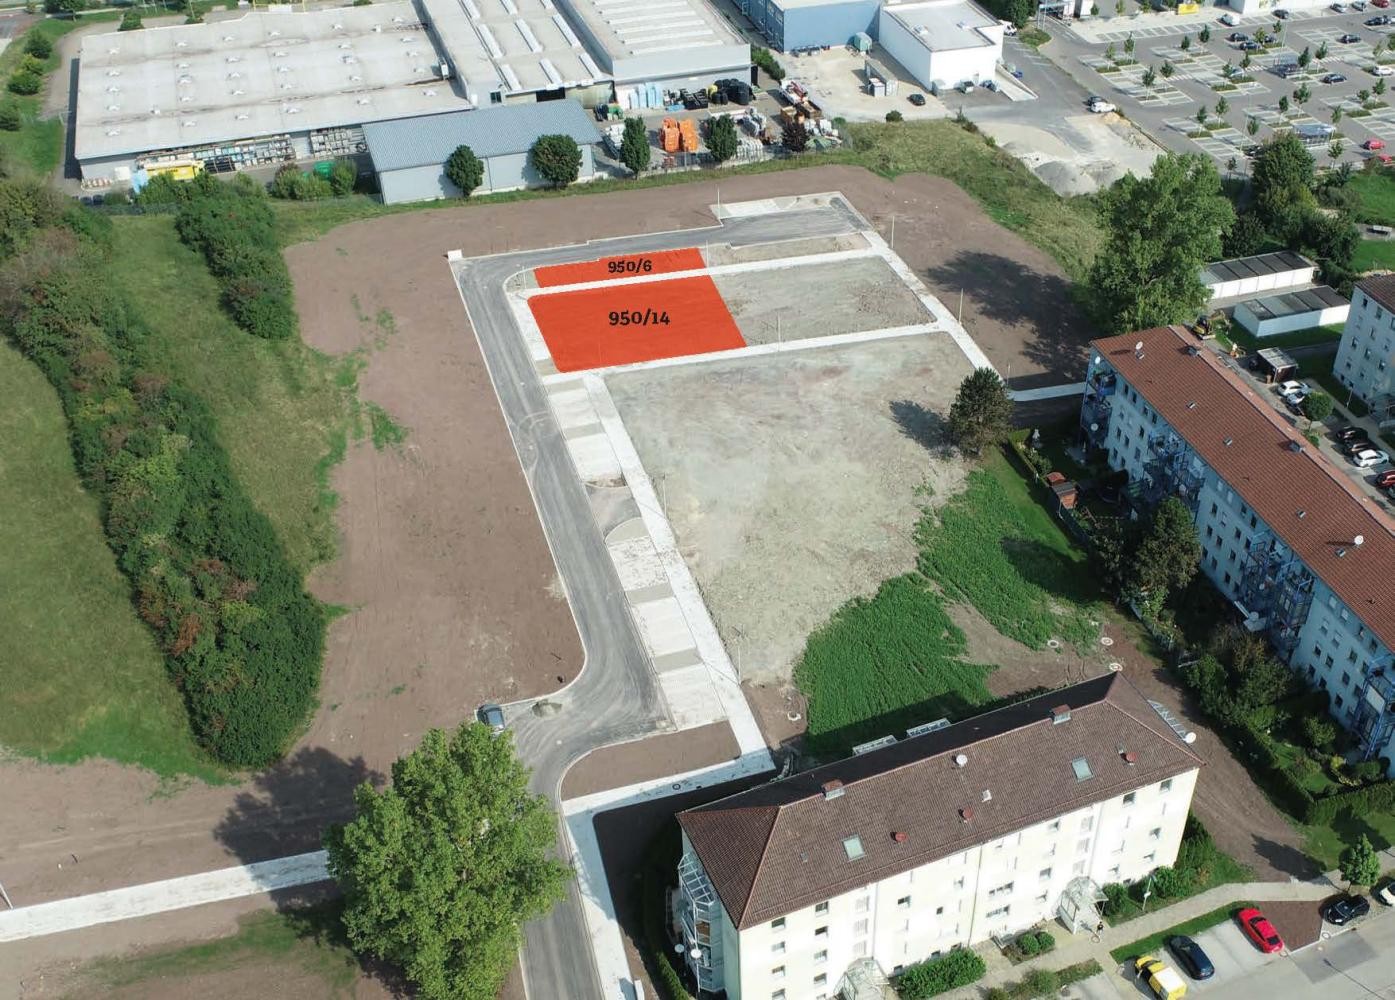 Grundstücke für eine Bauherrengemeinschaft im Baugebiet Heckenbühl